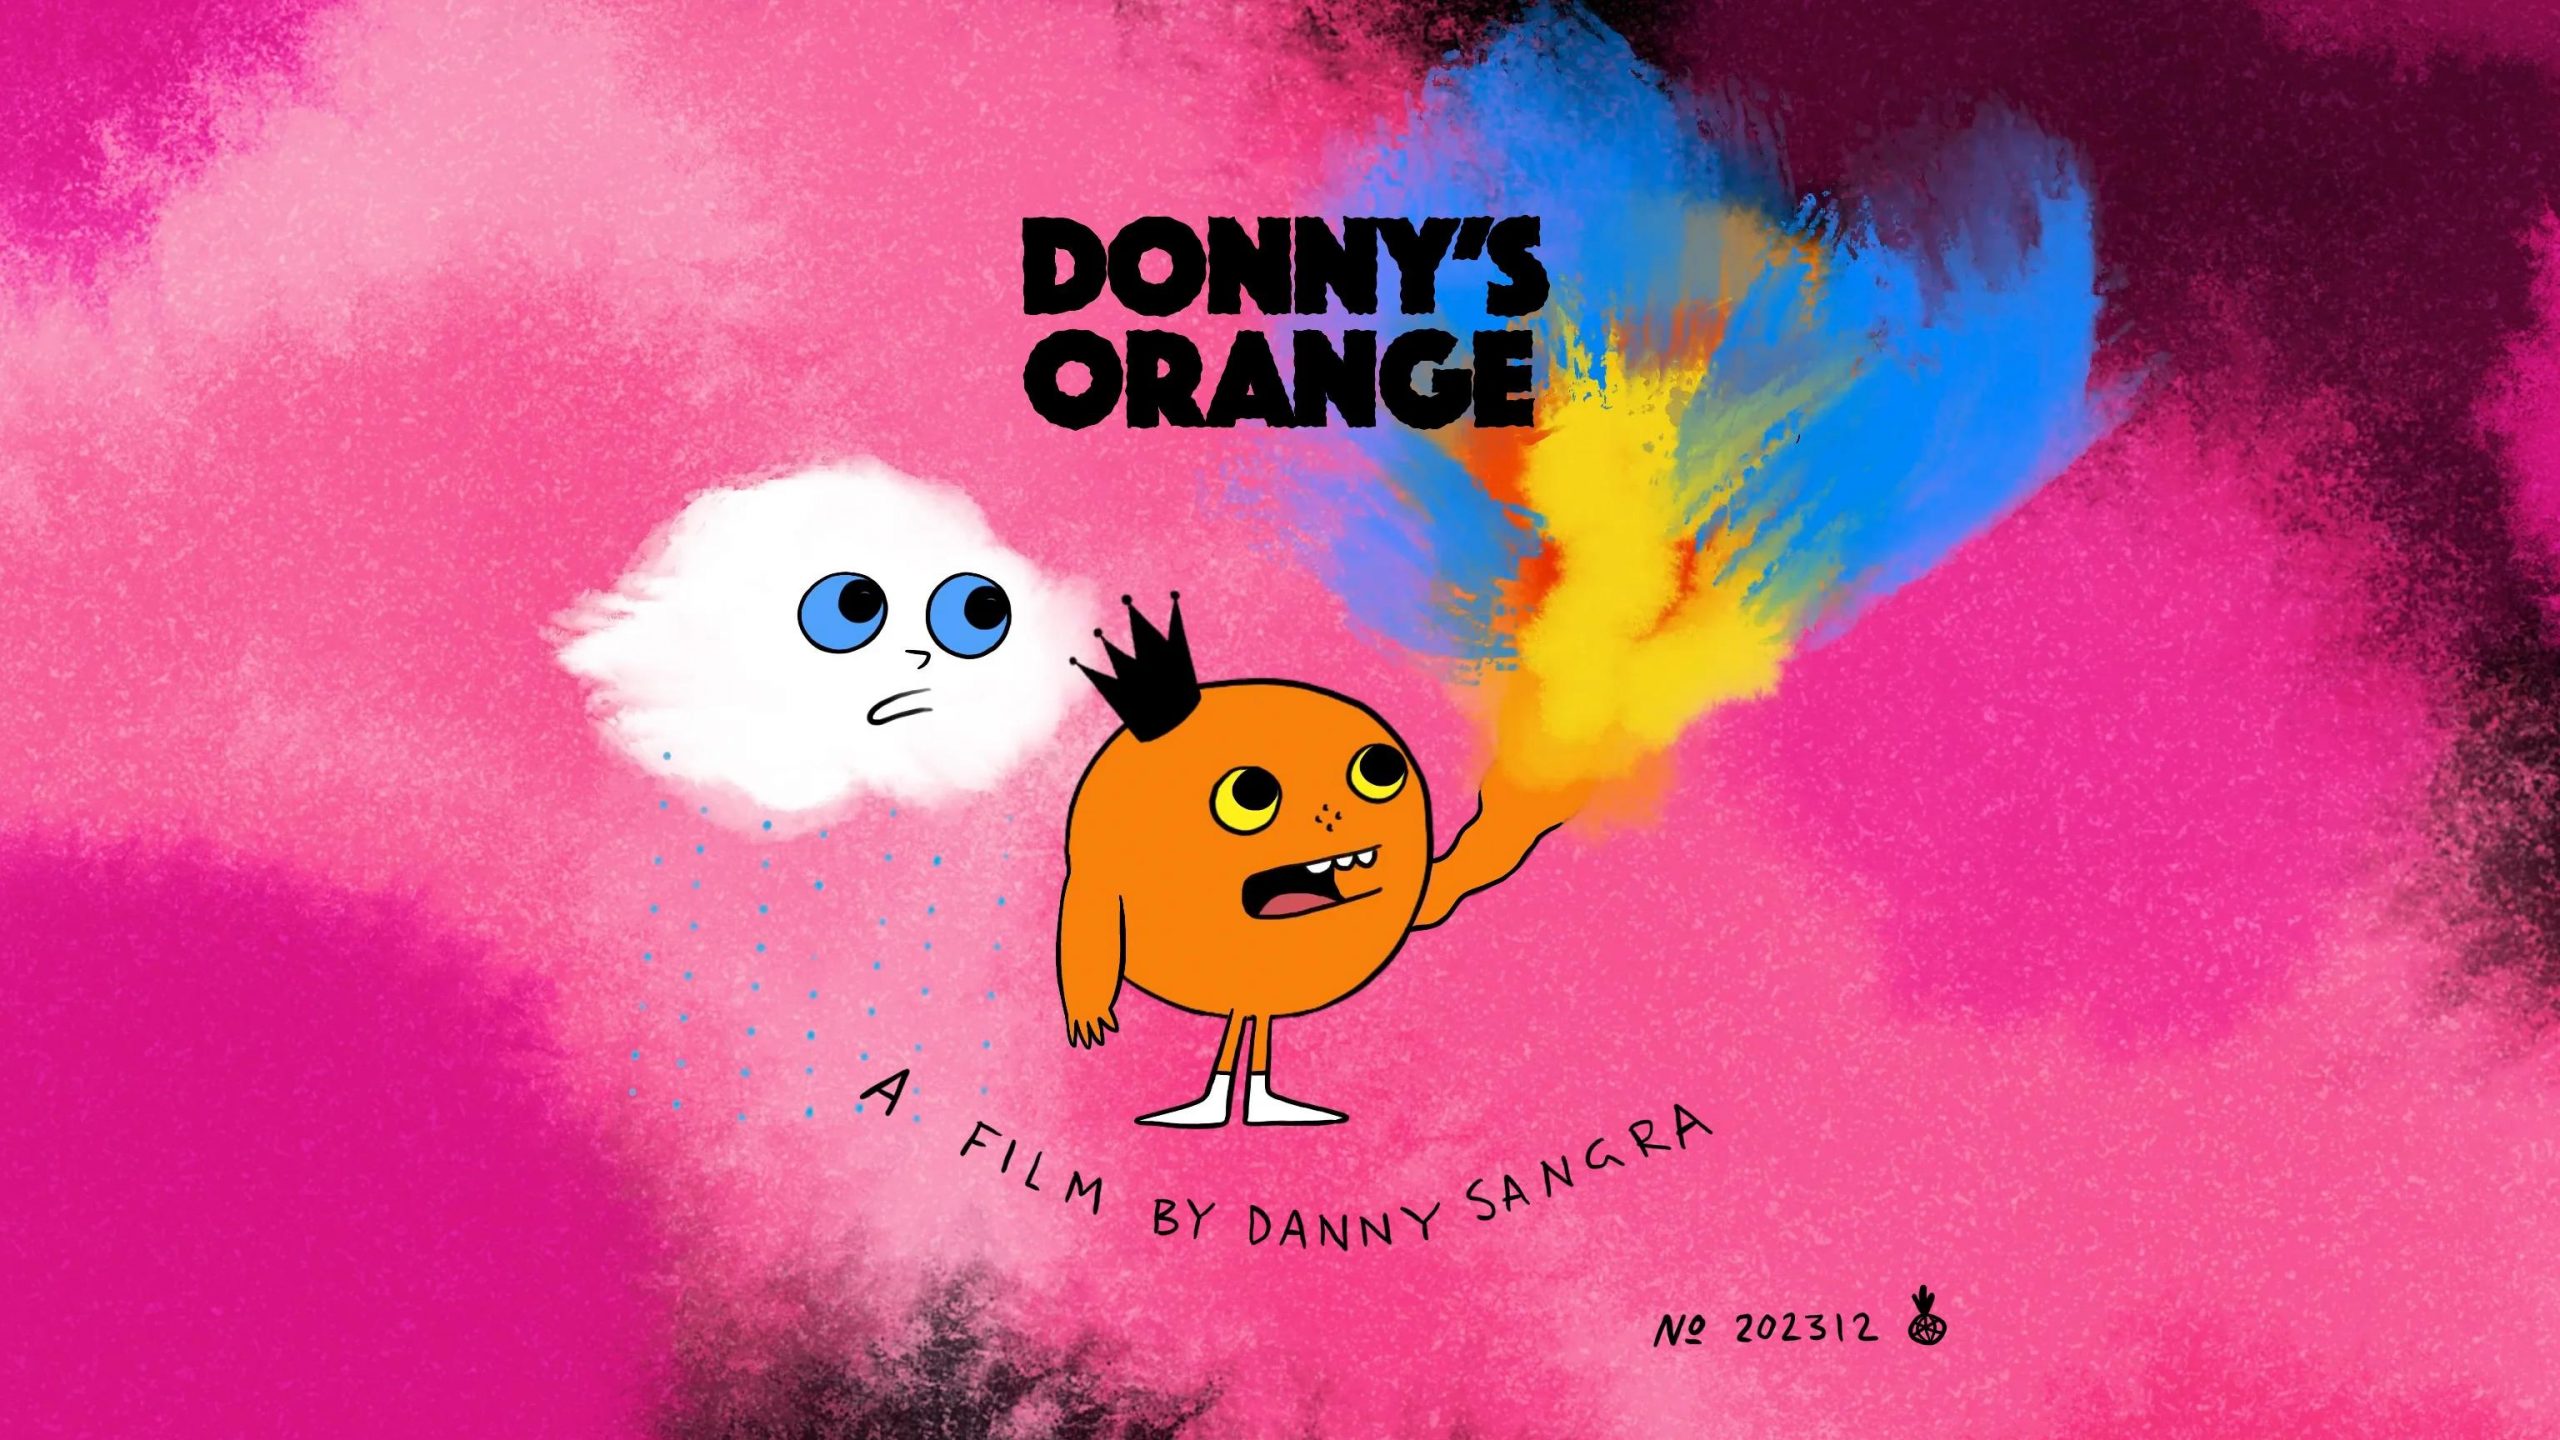 Donny’s Orange on Vimeo [Video]